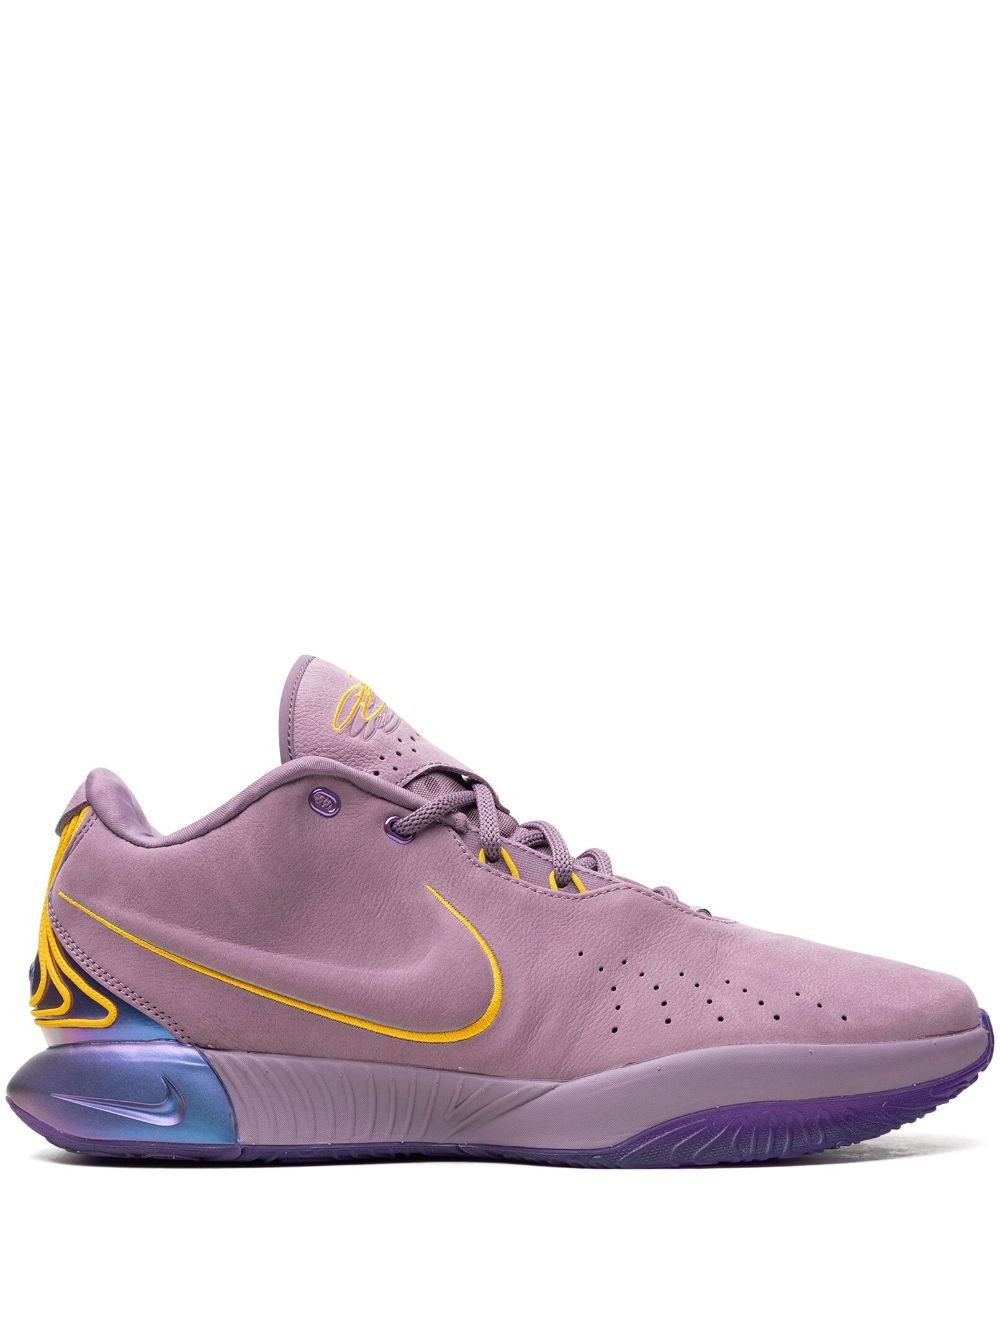 Image 1 of Nike LeBron XXI "Purple Rain" sneakers